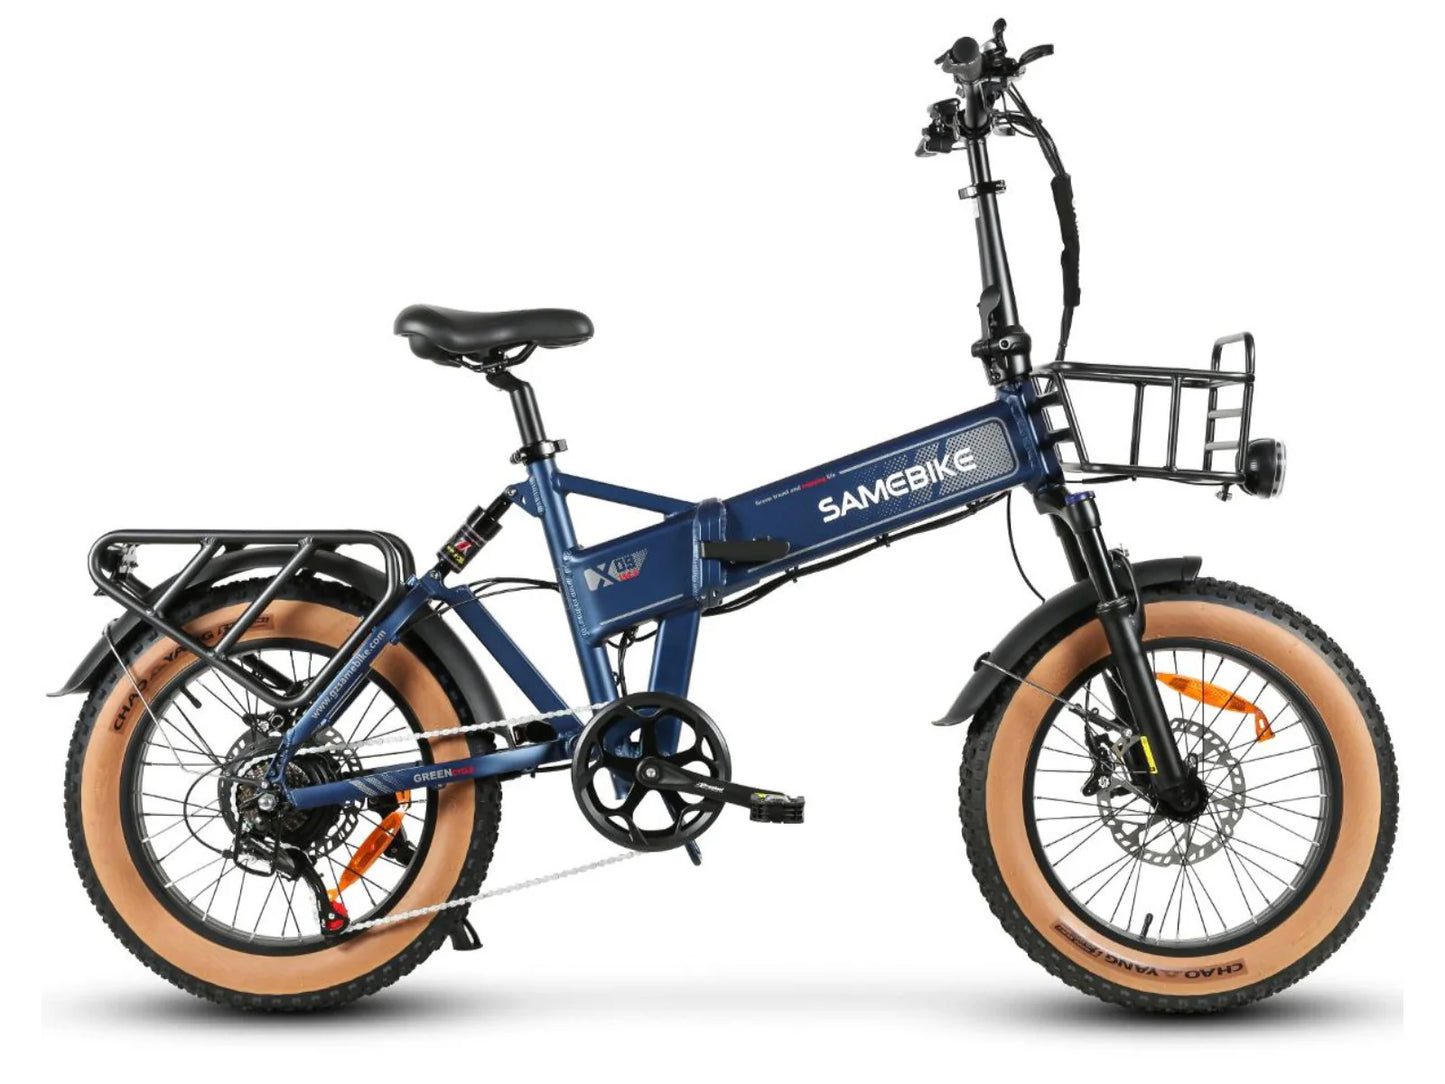 SAMEBIKE XWXL09 750W dobrável bicicleta elétrica da cidade 20 * 4,0 polegadas pneu gordo 48V 10AH bateria 80km quilometragem máxima